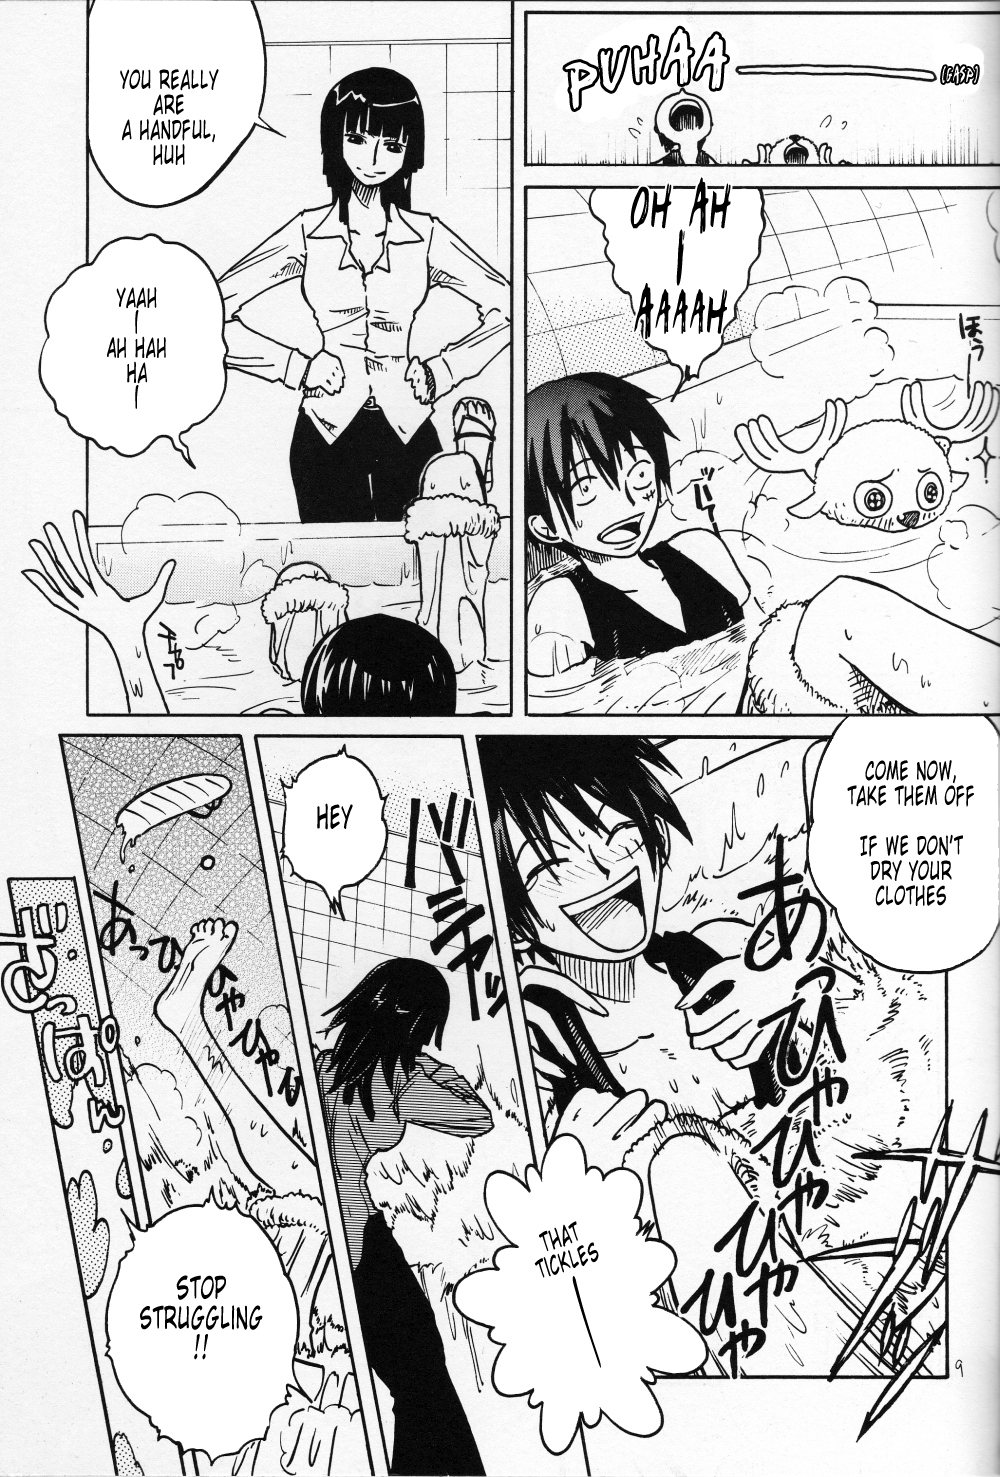 [Cafe Ruanky] {One Piece} Floral Talk [English Translated by Tonigobe] [Cafeルァンキー (宮本たけし, 北里双葉)] フローラル・トーク (ワンピース) [英訳]